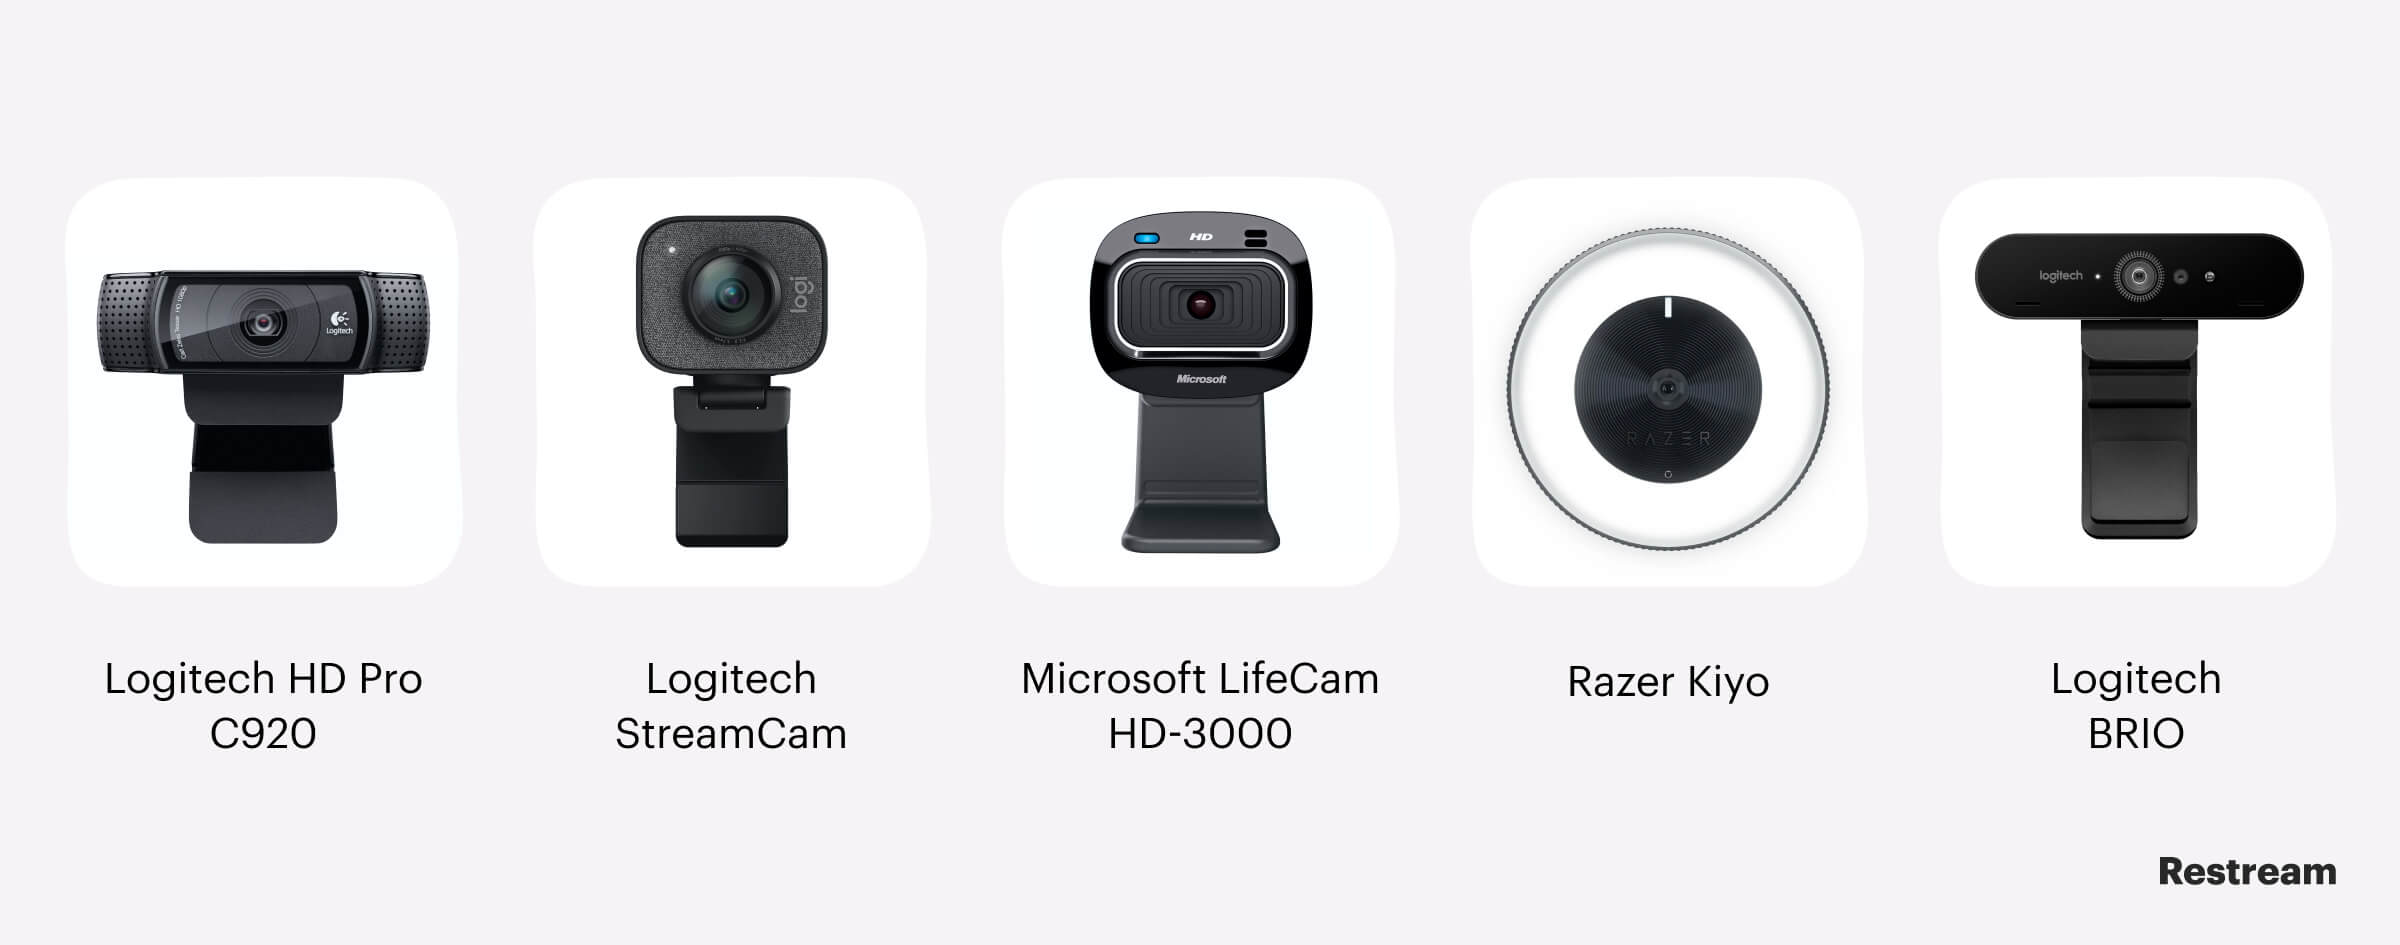 Melhores webcams para streaming no Twitch